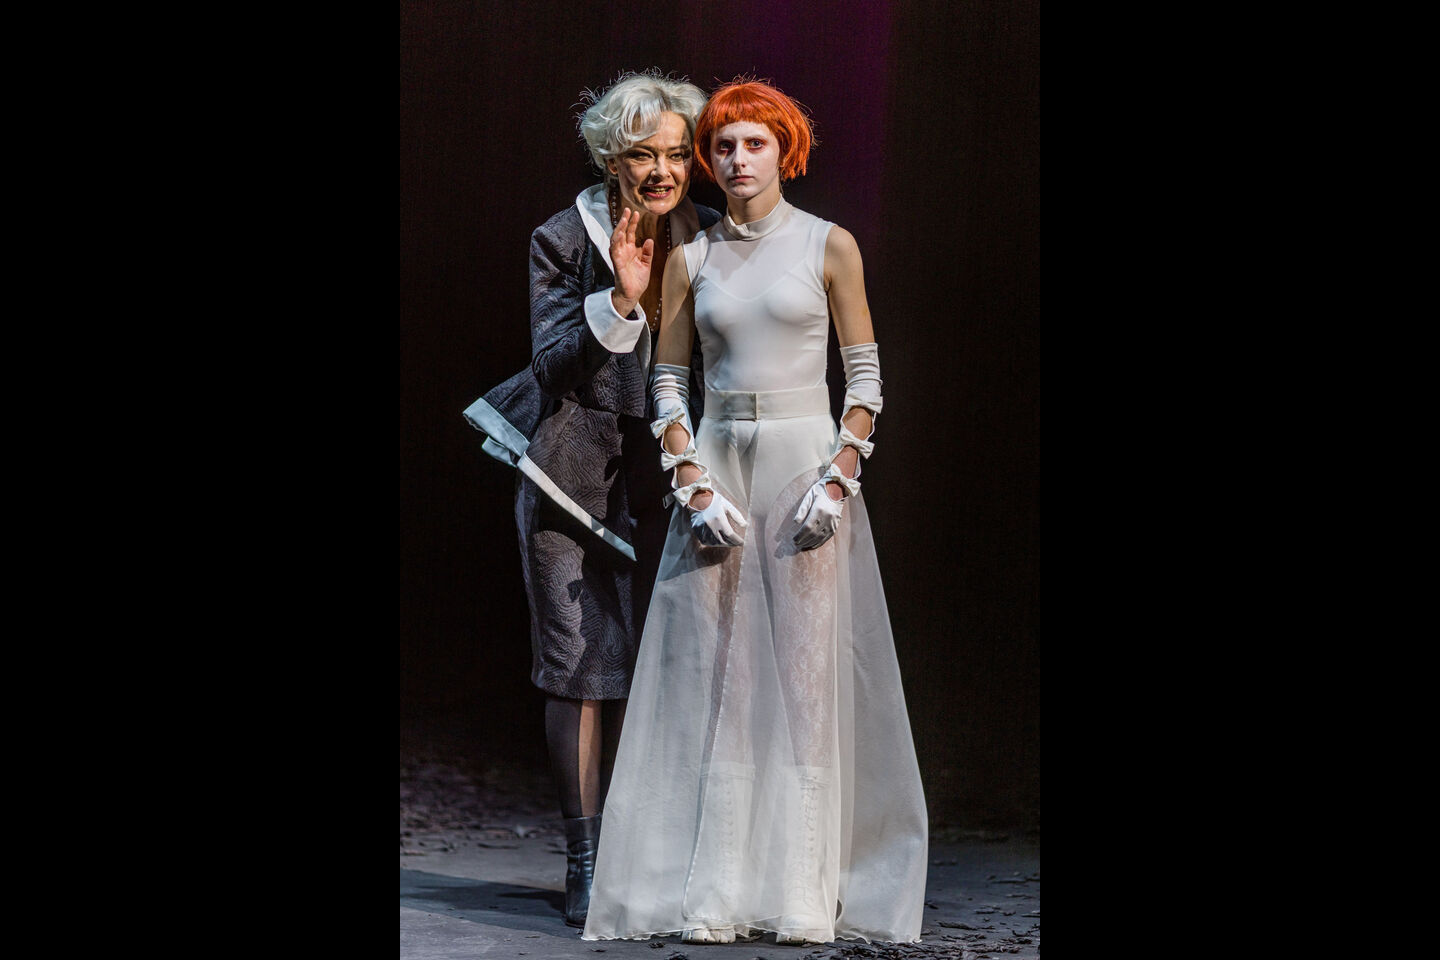 ROMEO UND JULIA 
Szenenfoto mit Nathalie Schörken (Julia) und (im Hintergrund) Manolo Bertling (Tybalt)
(Foto: Frank Hammerschmidt) 